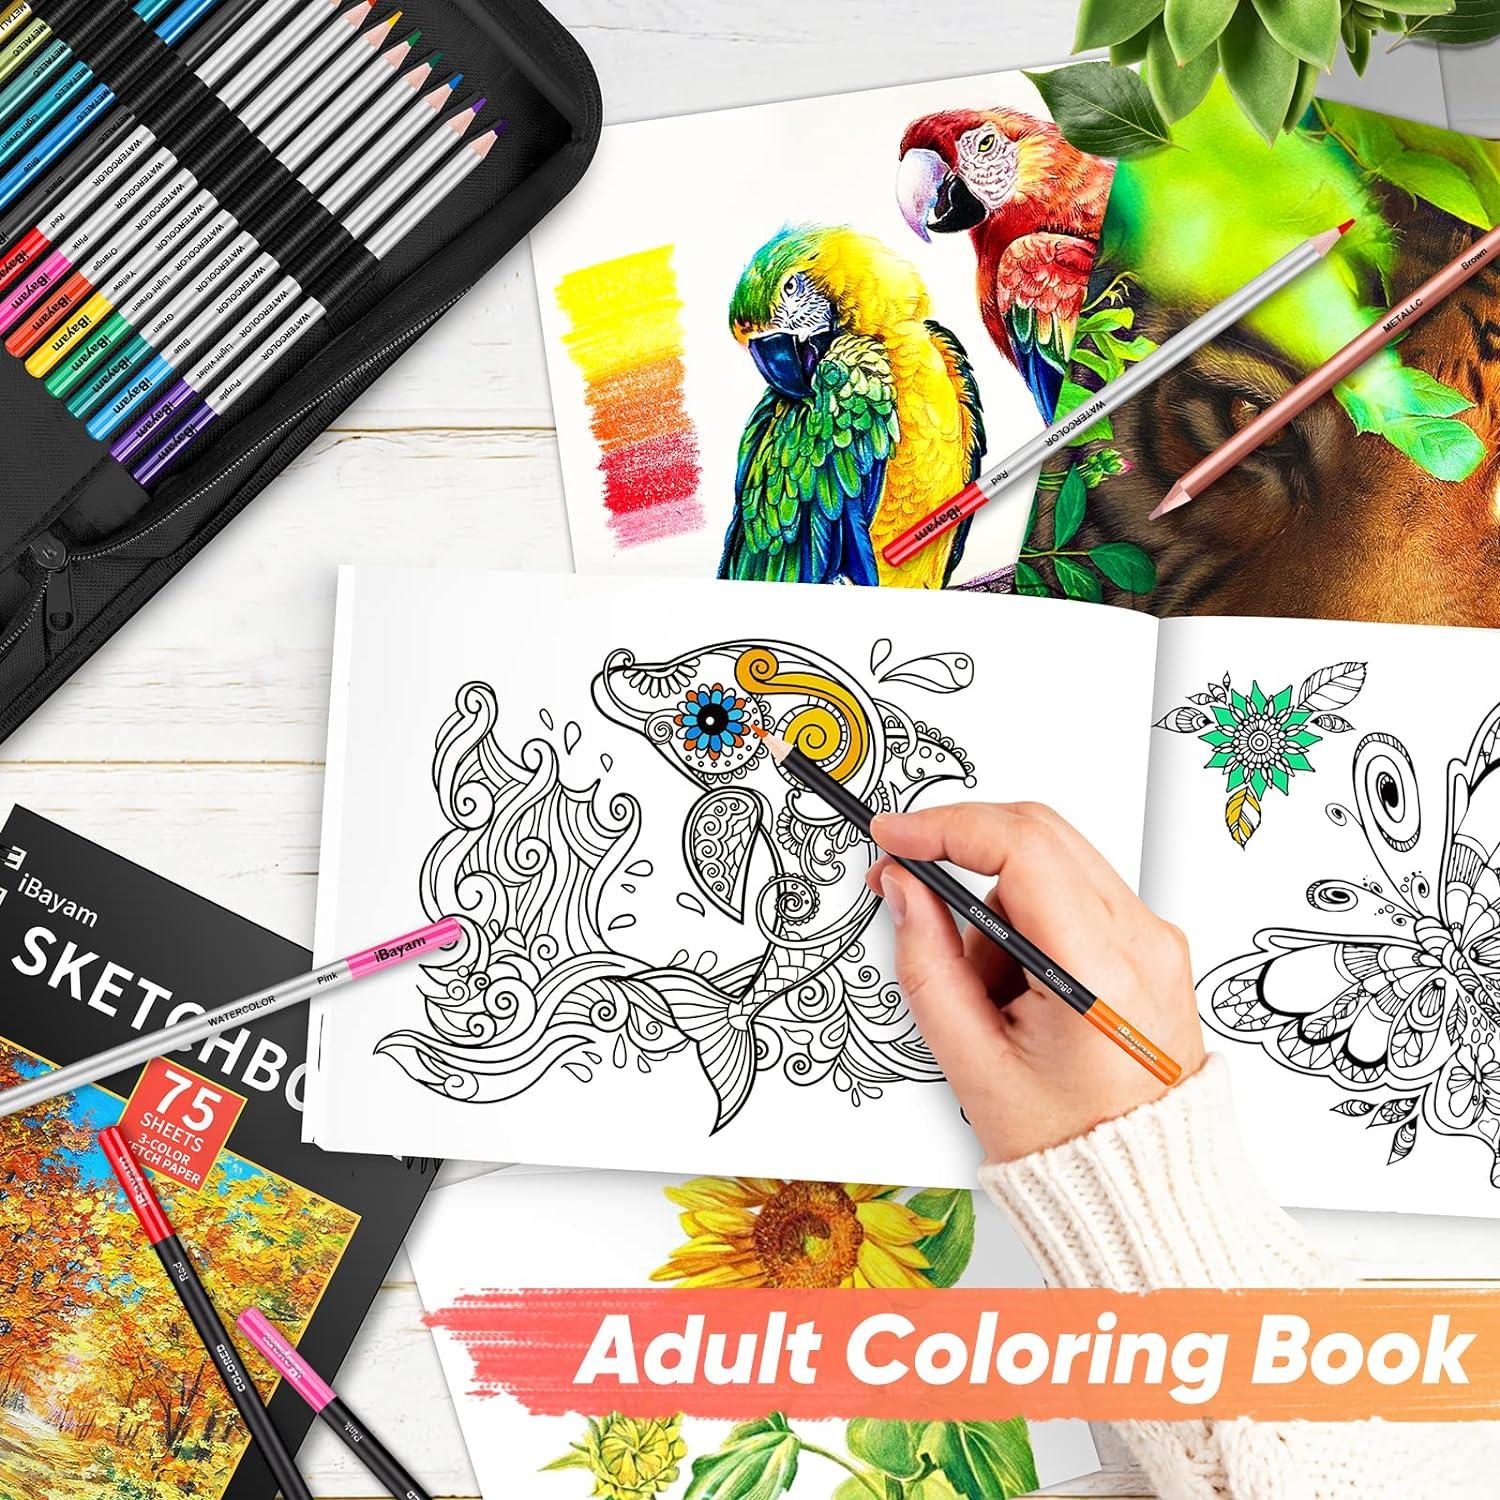 iBayam Art Kit Art Supplies Drawing Kits Arts and Crafts for Kids